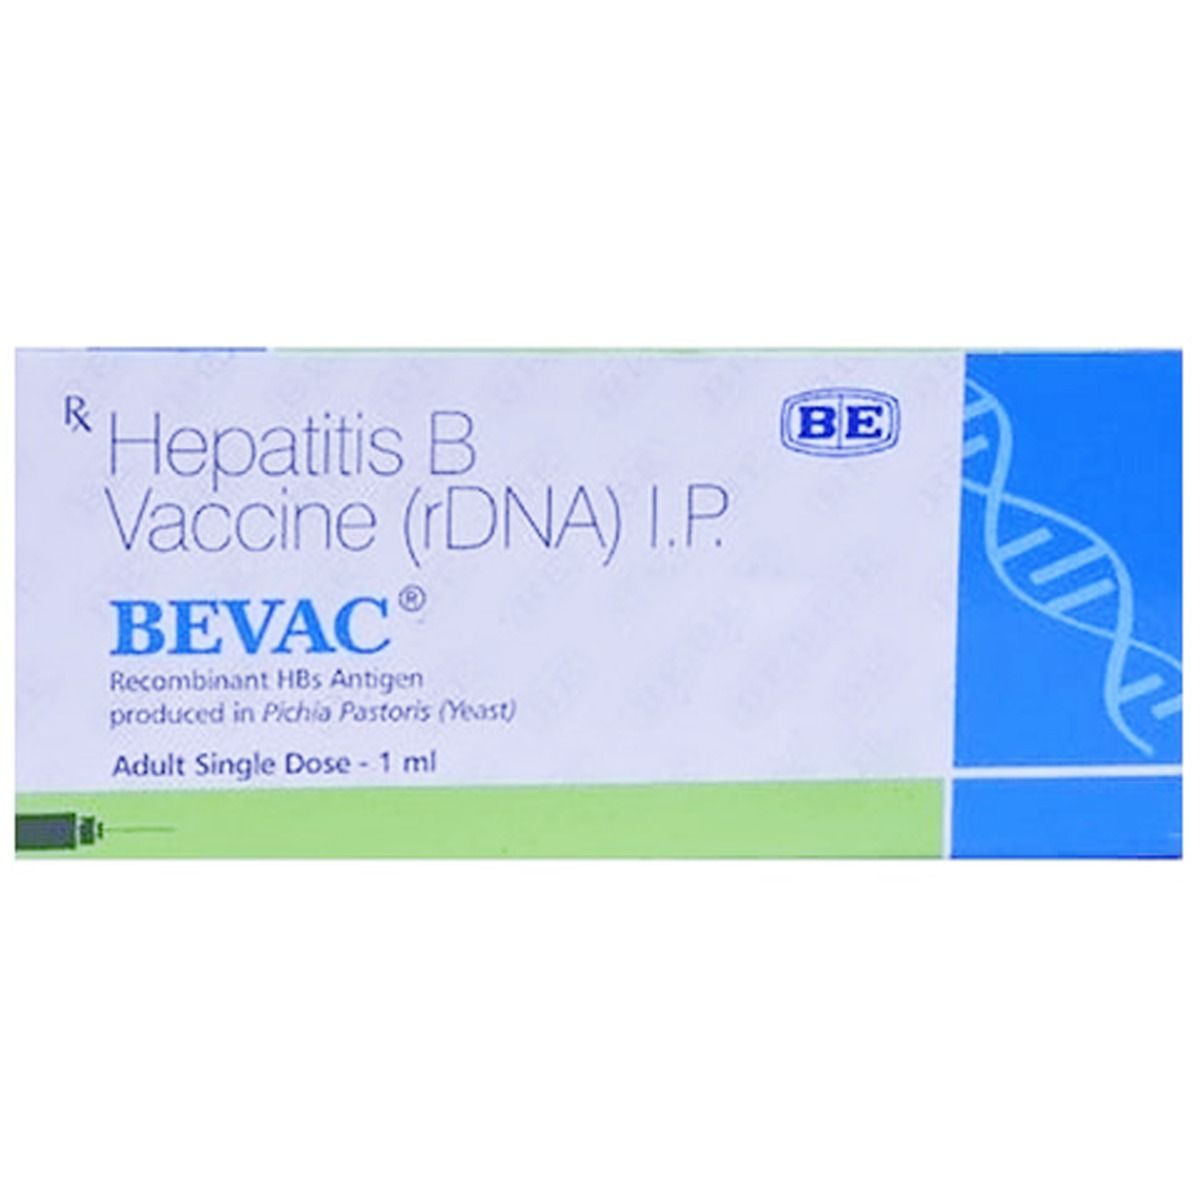 Buy Bevac Adult Vaccine 1 ml Online